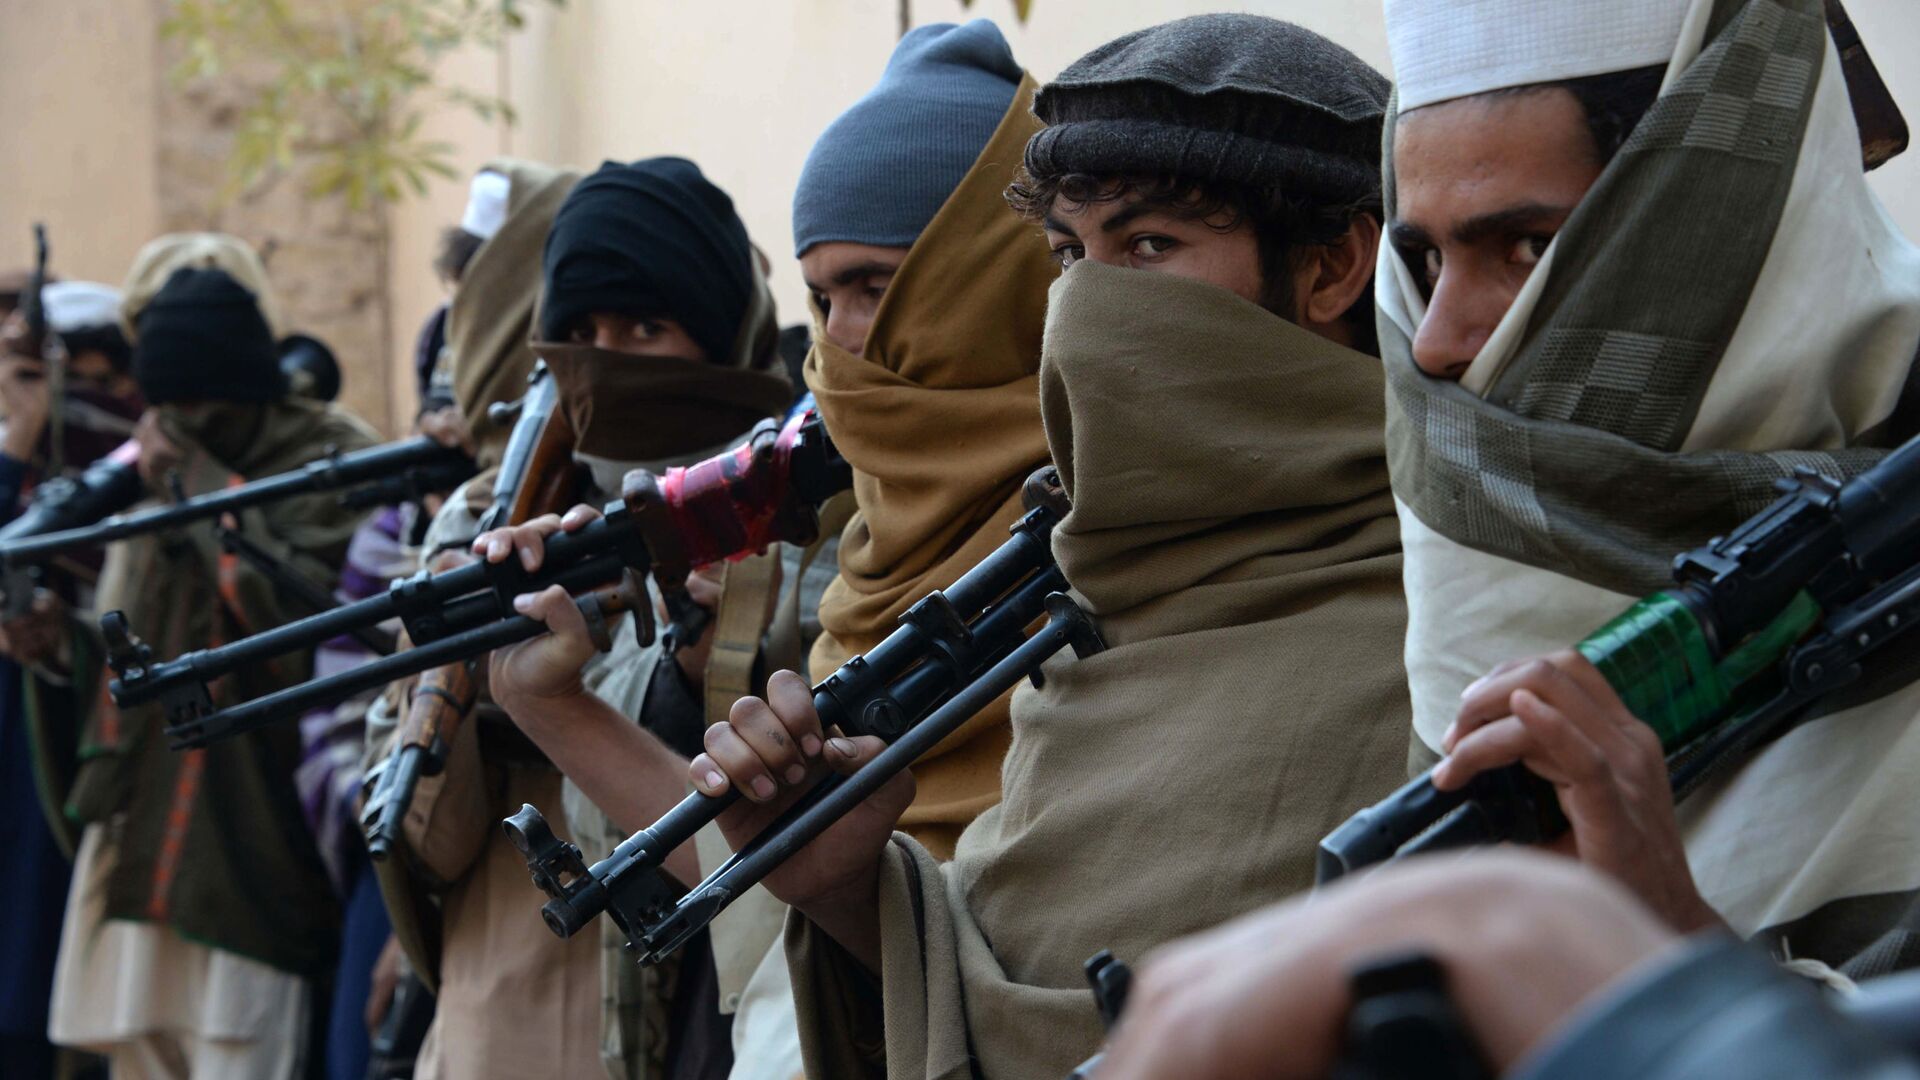 Bivši talibani sa oružjem pre njihovog predavanja u Džalalabadu, 2015. - Sputnik Srbija, 1920, 16.08.2021